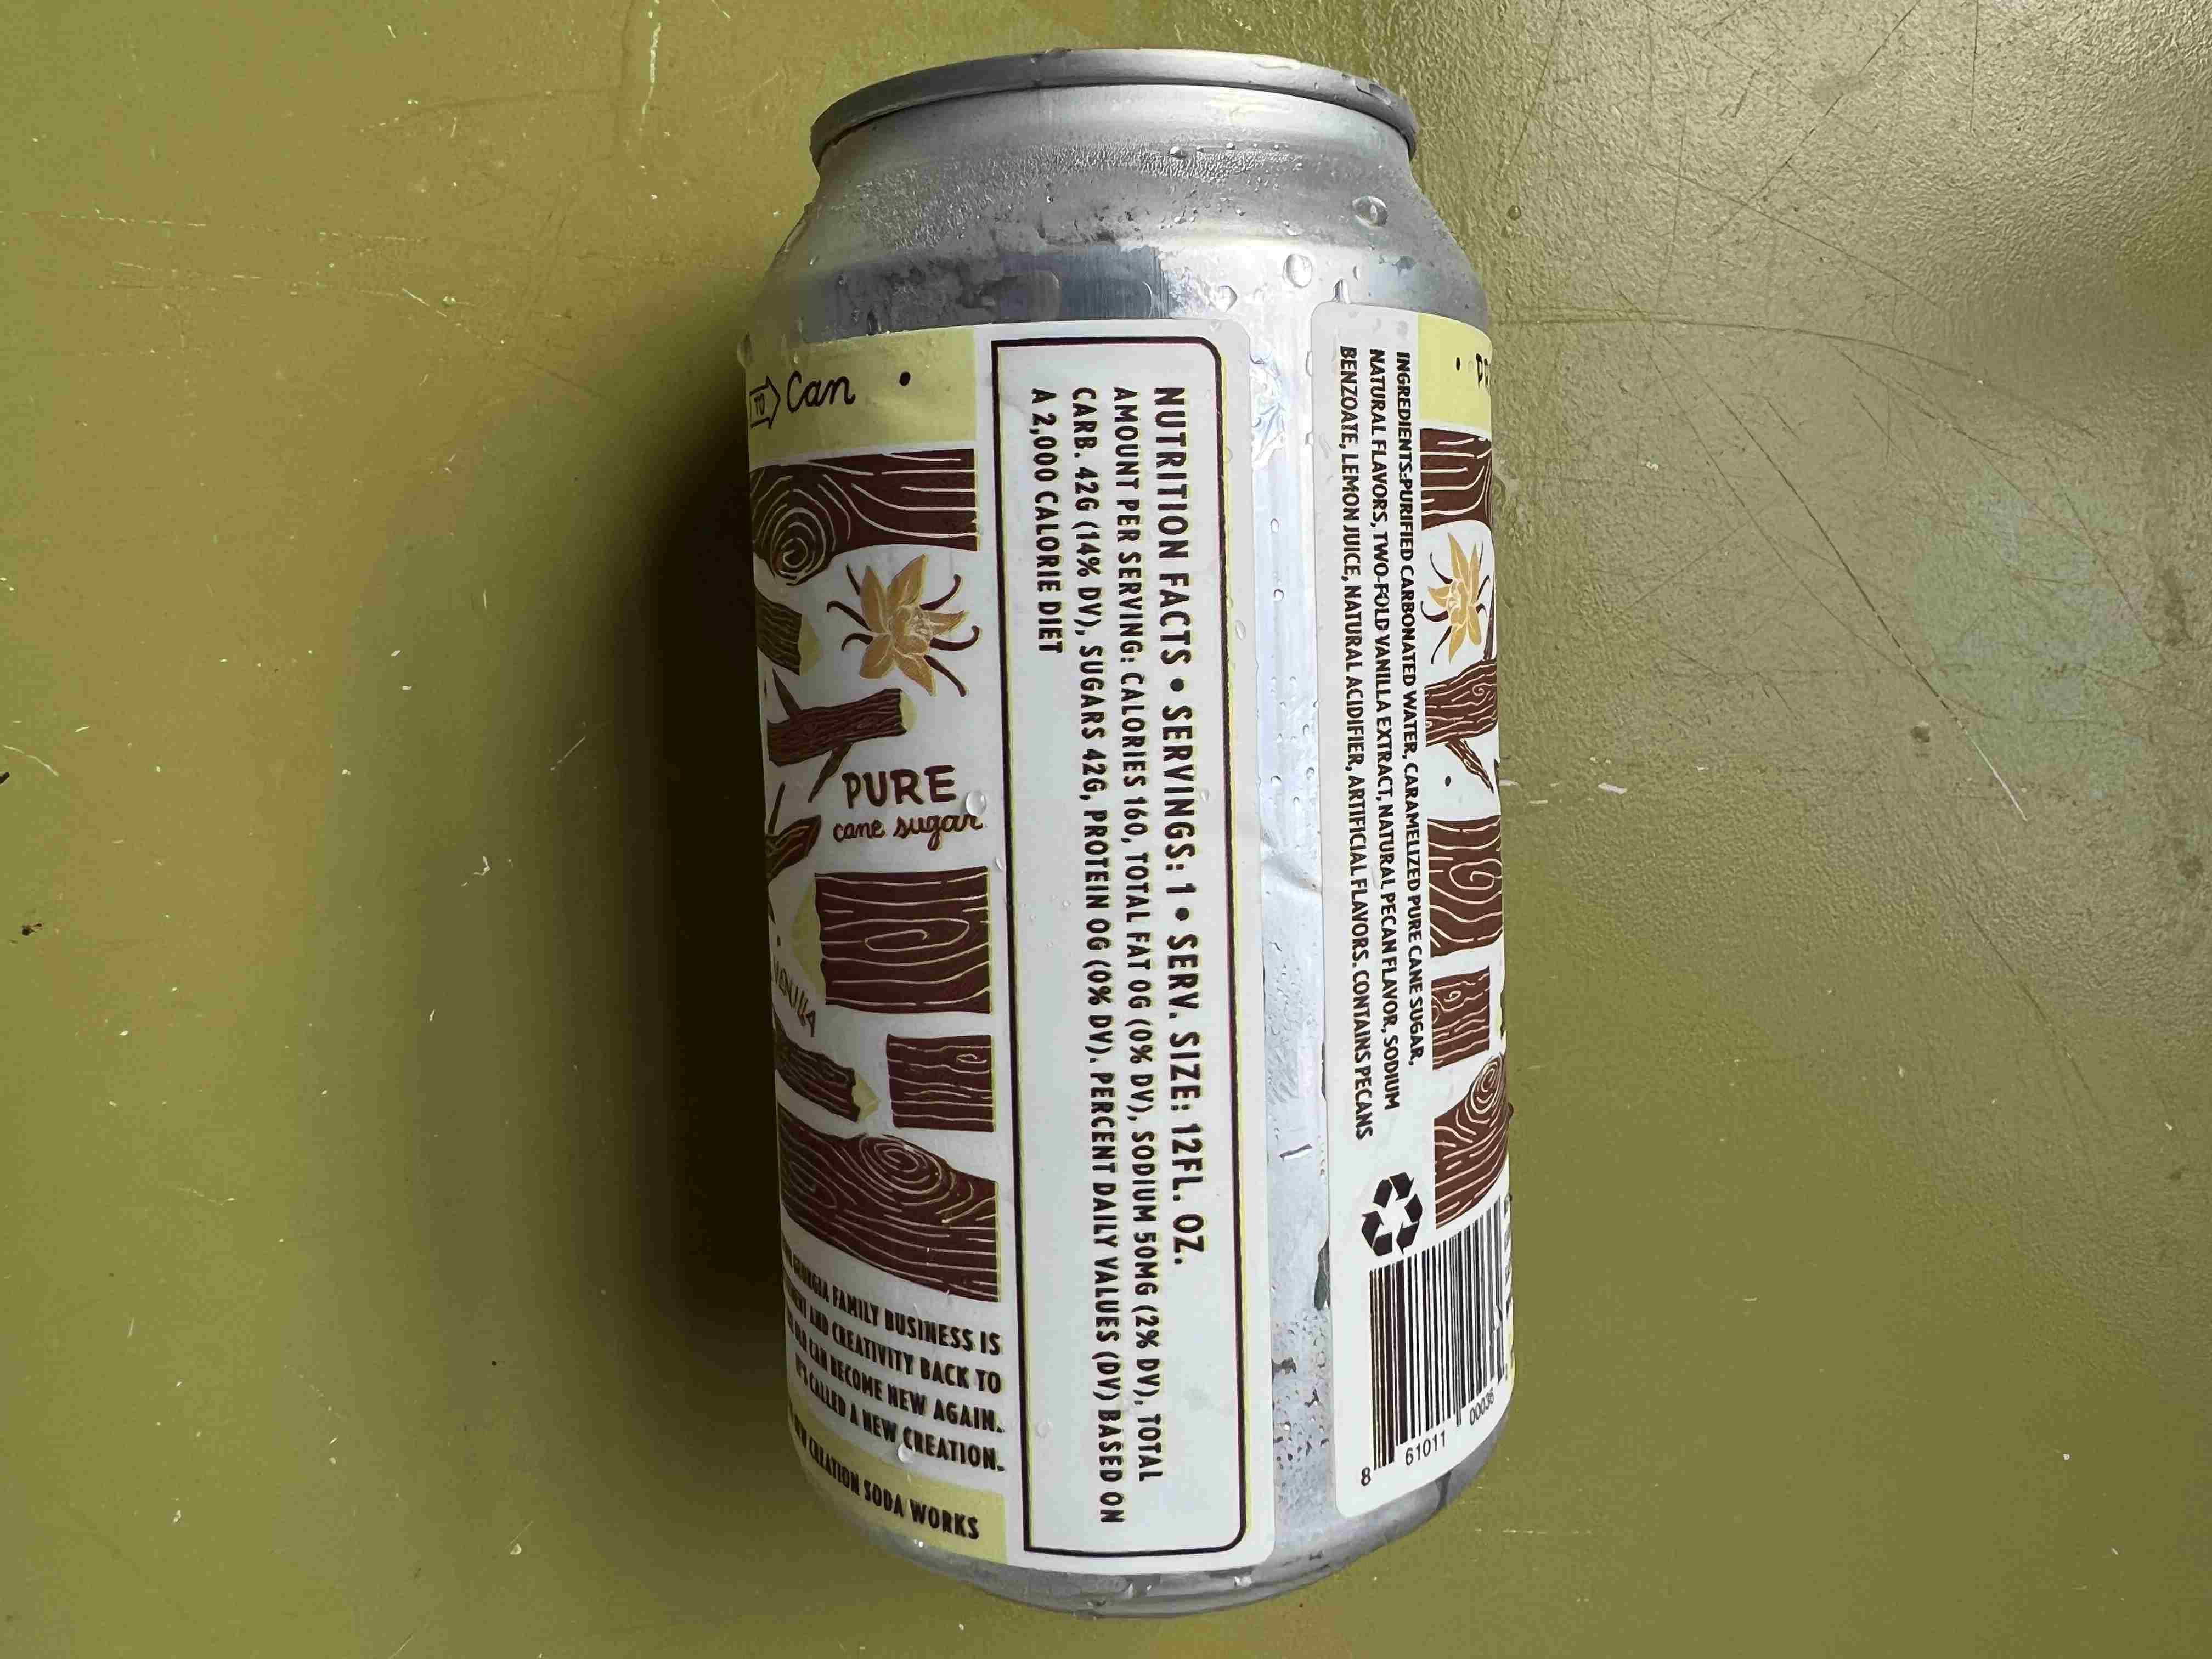 Soda Pop Root Beer [4pk], New Creation